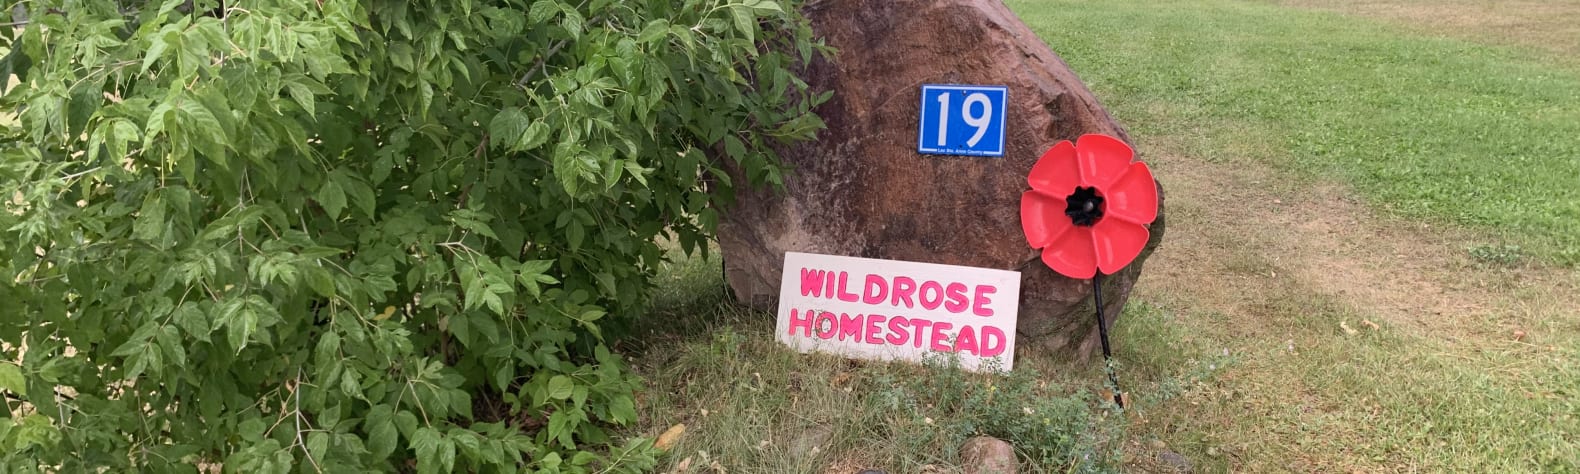 Wildrose Homestead